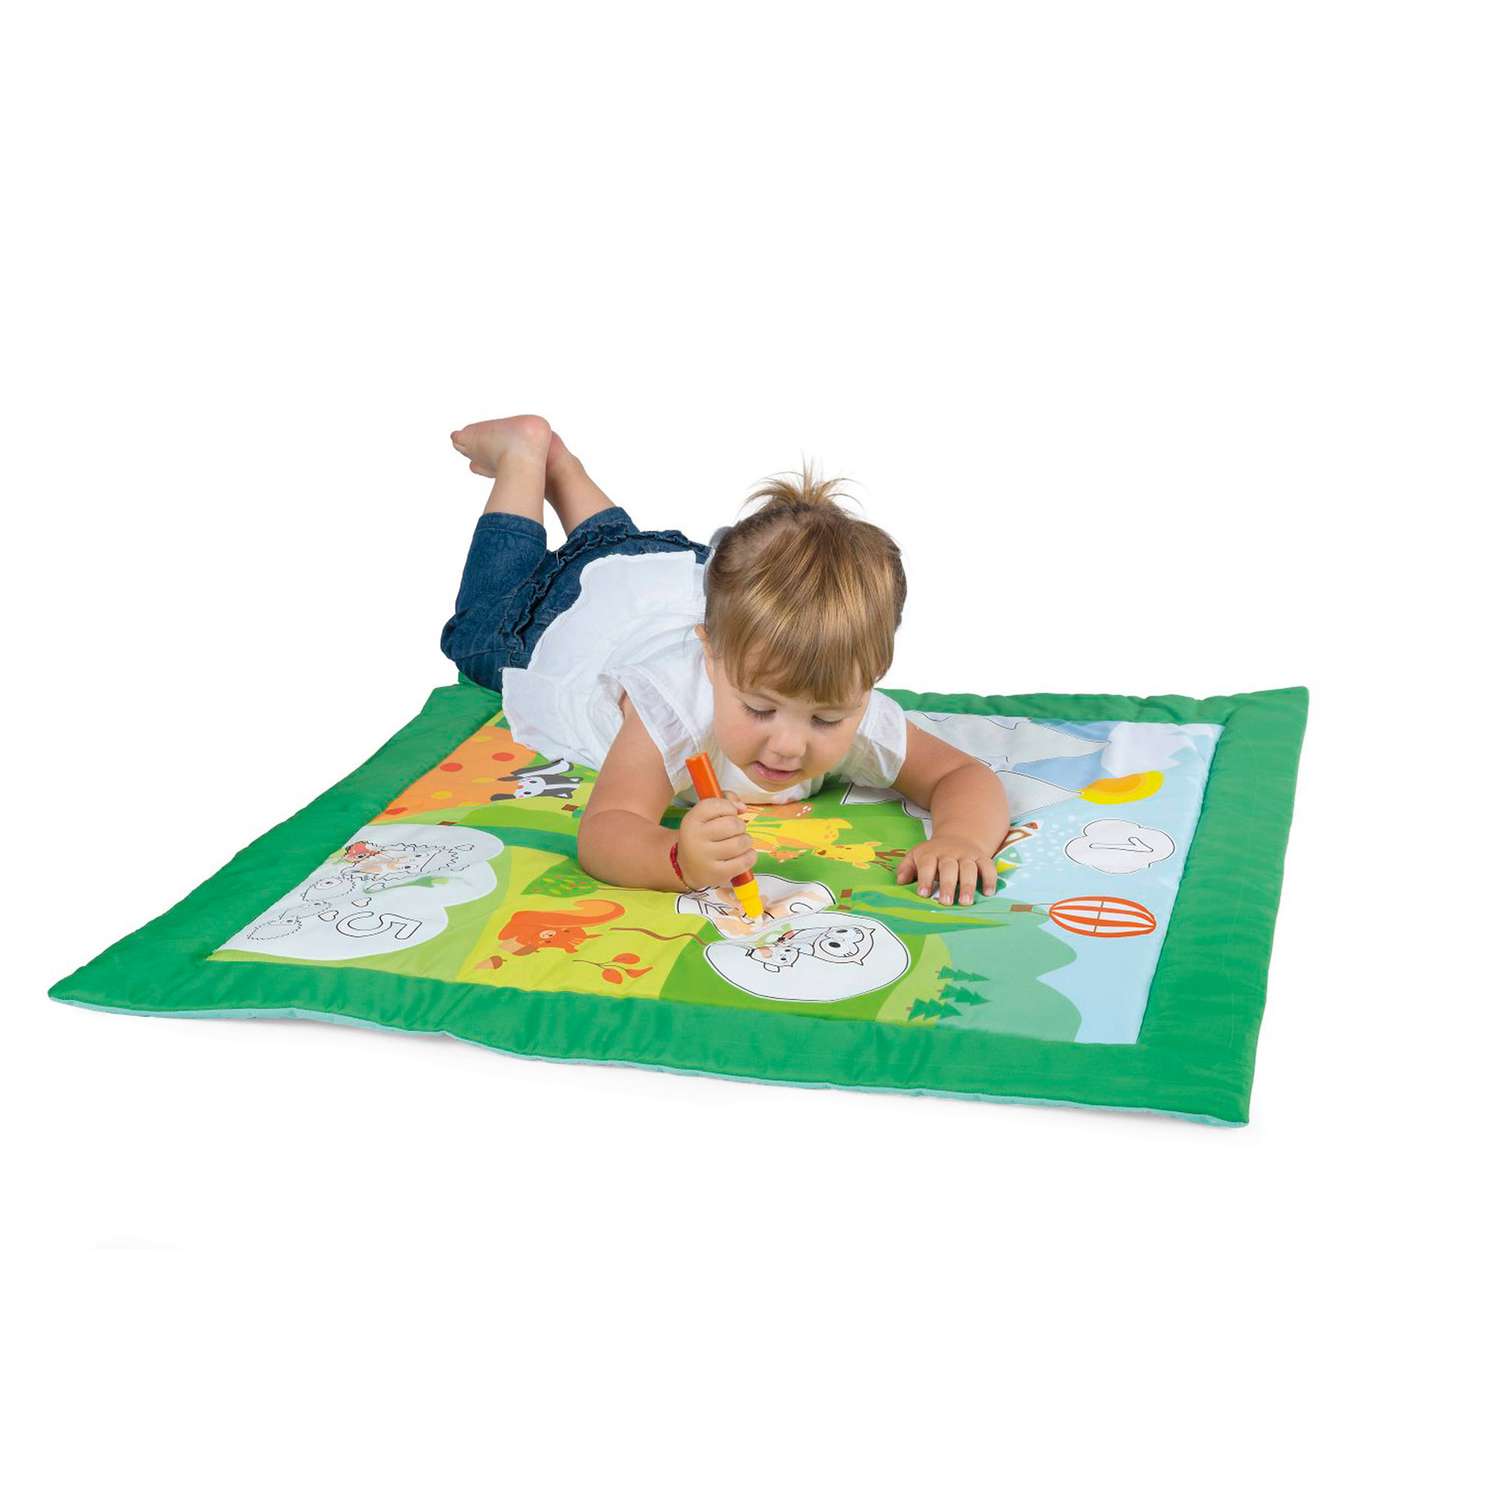 Коврик CHICCO Игровой развивающий детский коврик Colour Mat - фото 4